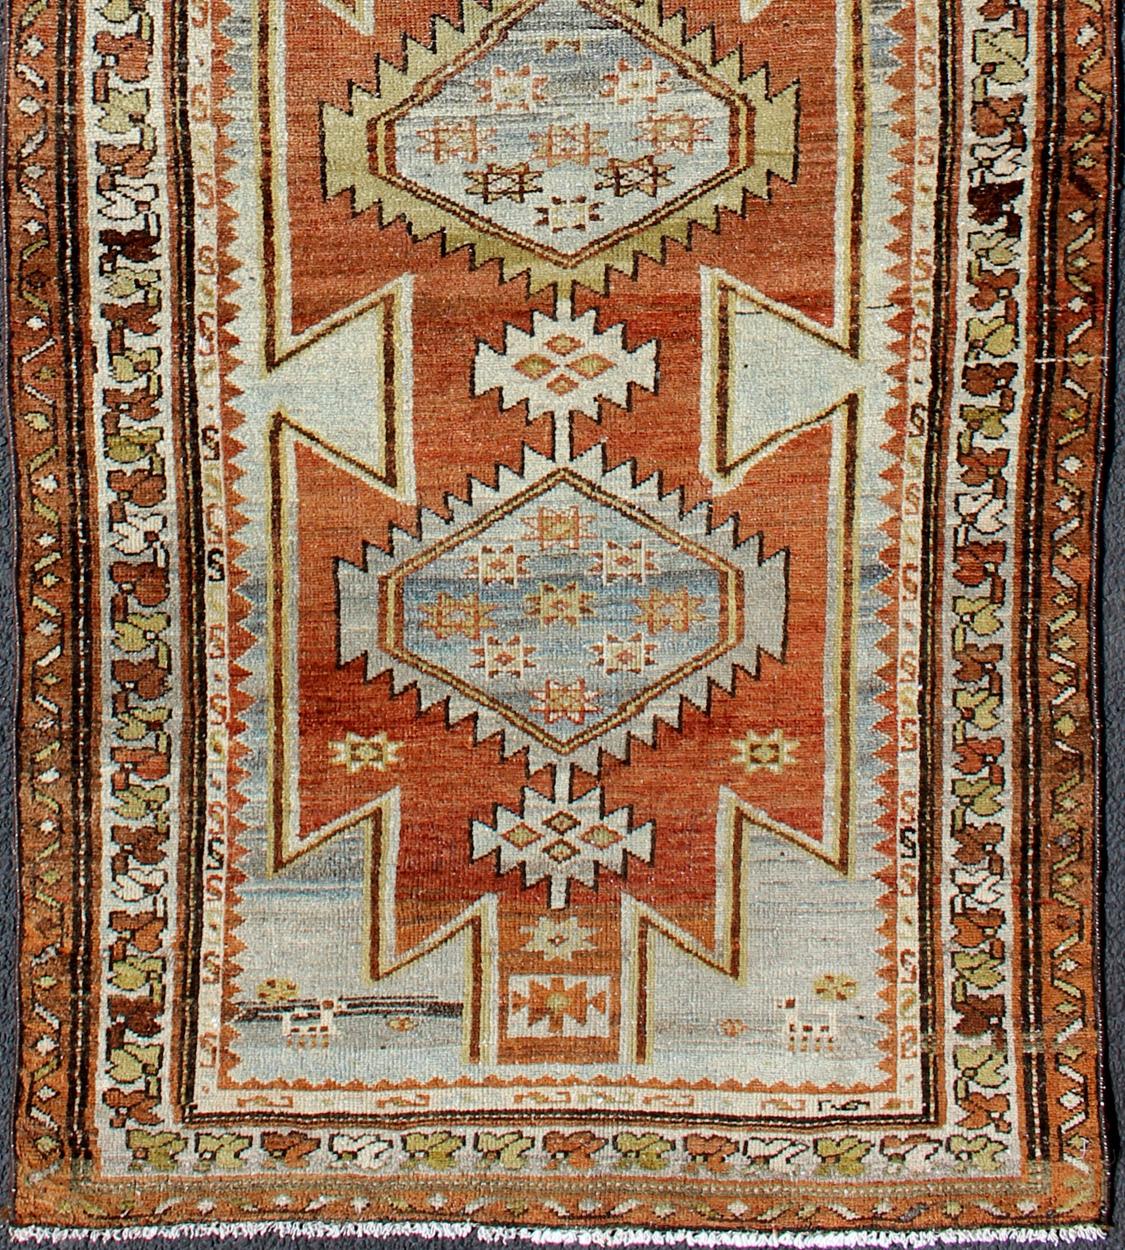 Orangefarbener antiker persischer Hamedan-Läufer mit Stammesmedaillons, Teppich gng-4742, Herkunftsland / Art: Iran / Hamedan, um 1920

Dieser antike persische Hamedan-Galerie-Teppich (etwa Anfang des 20. Jahrhunderts) zeichnet sich durch eine